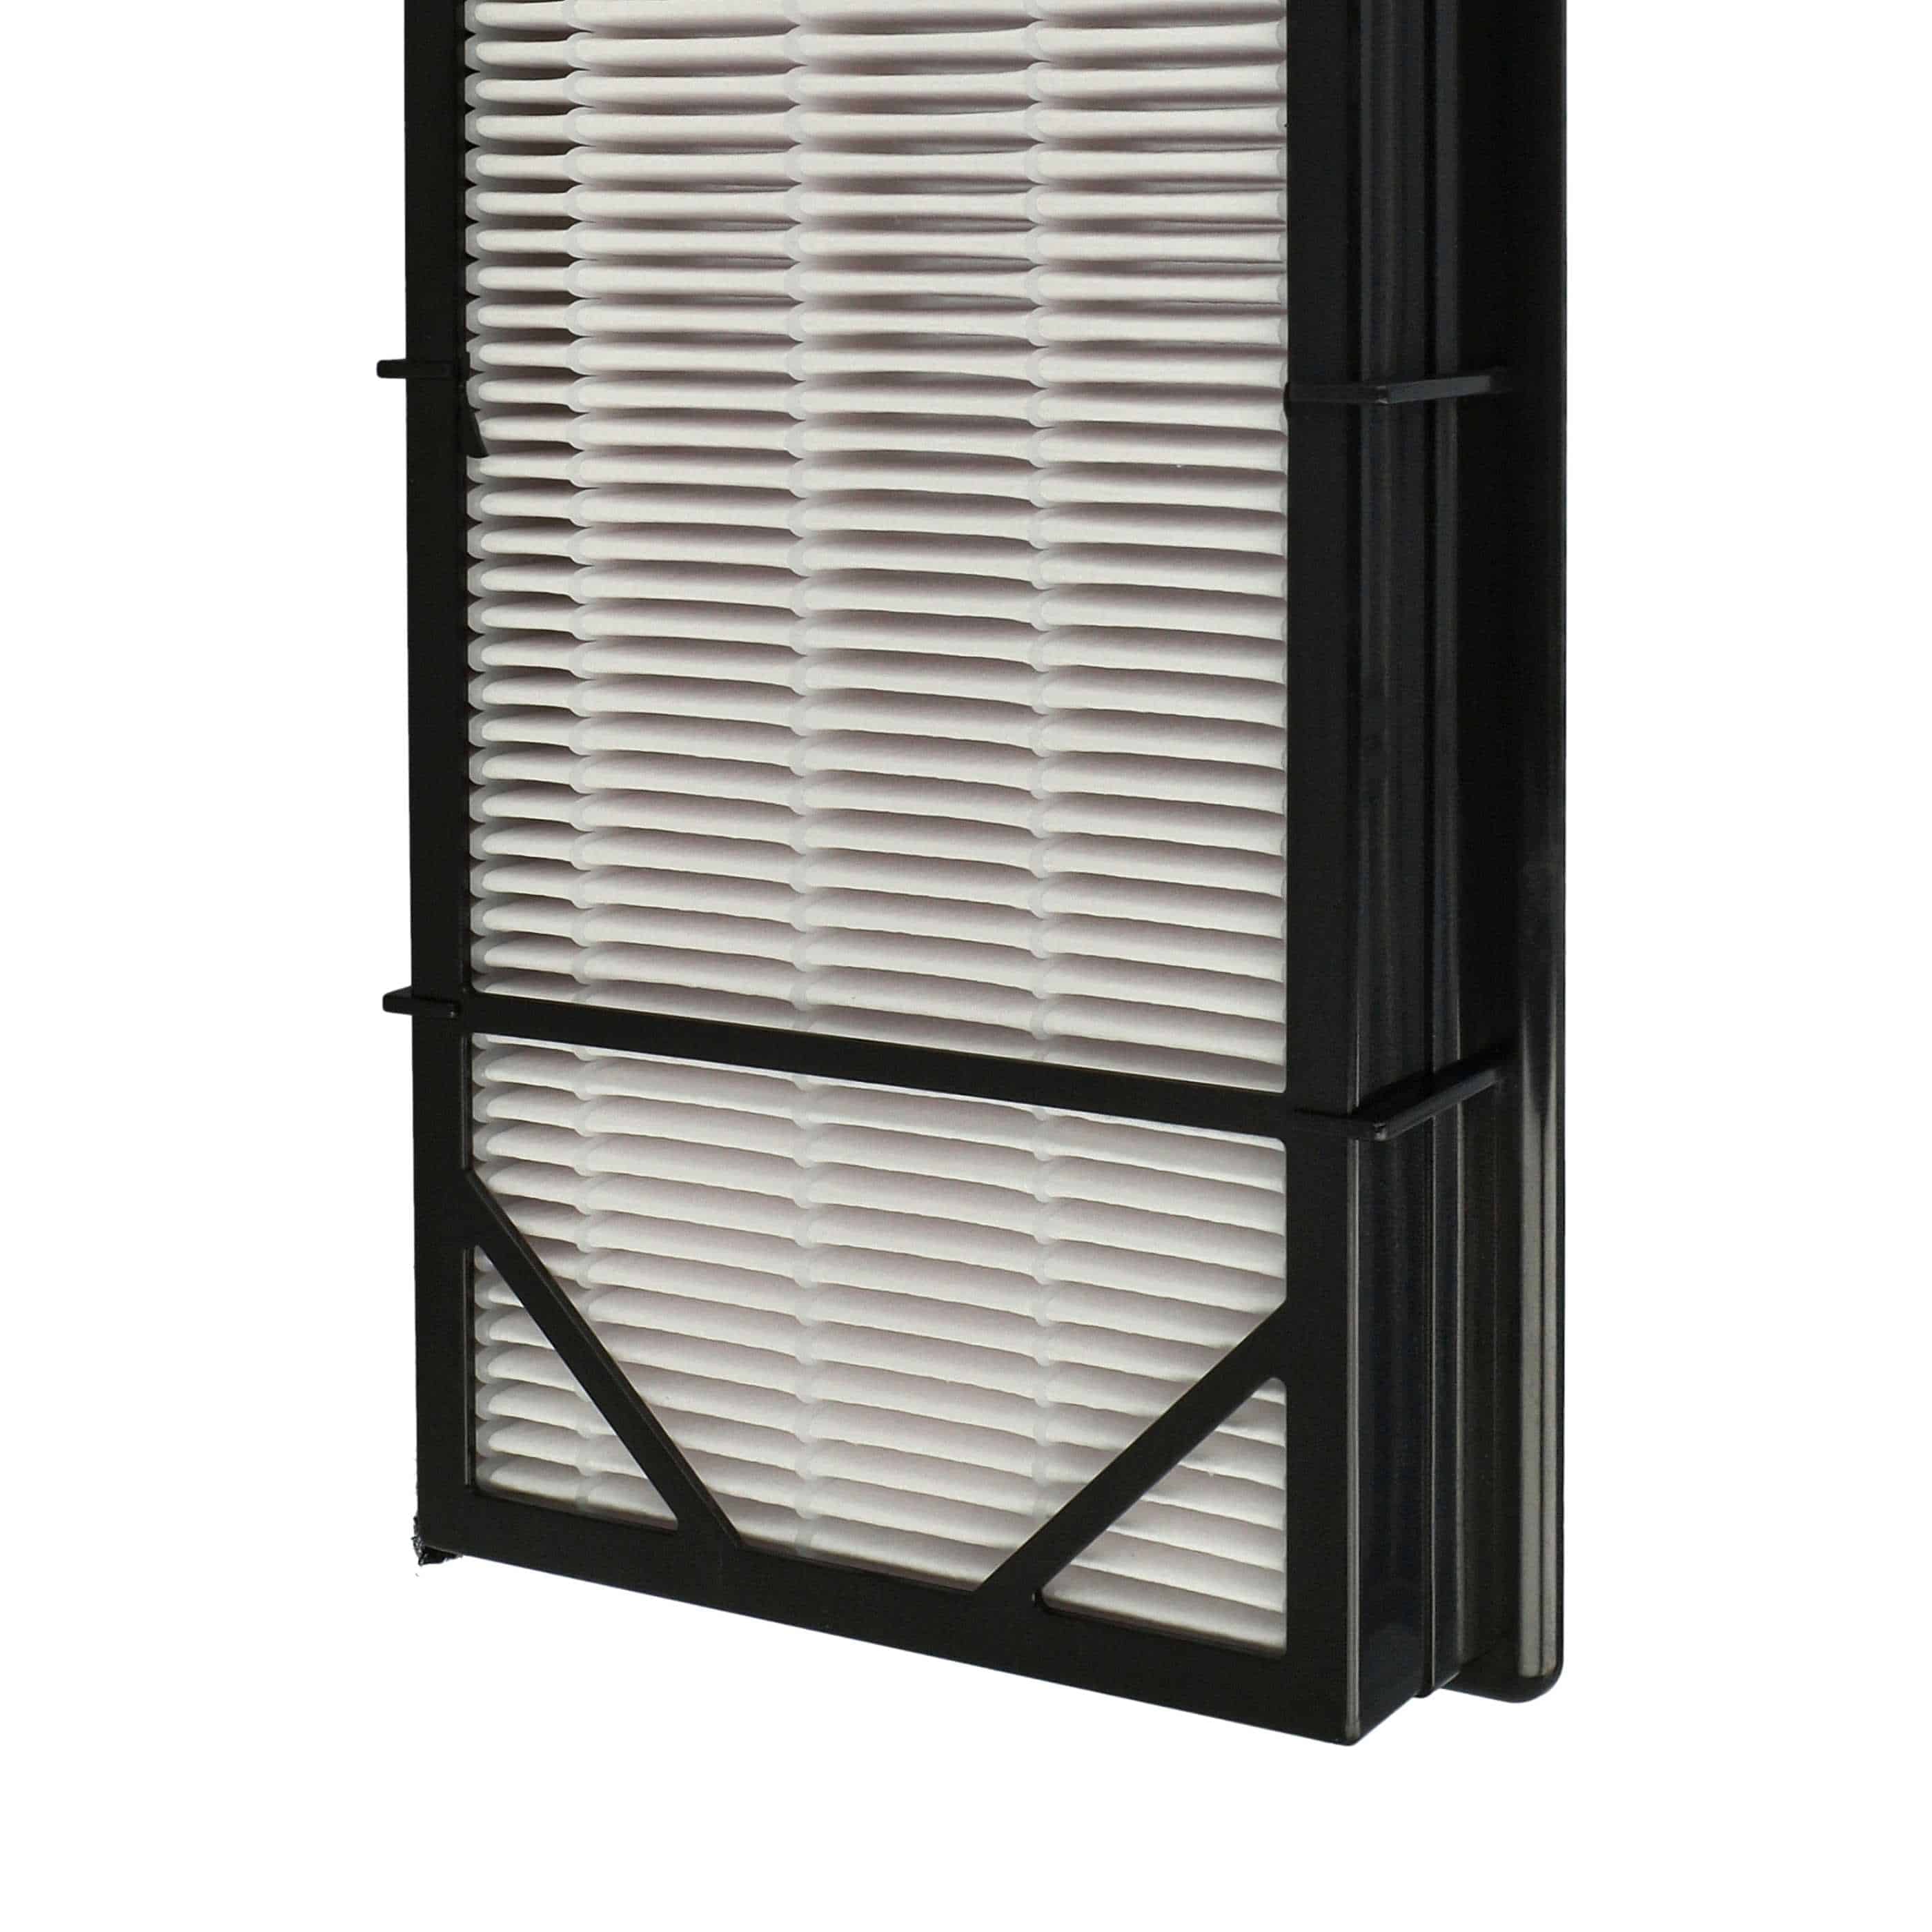 2x Filtry do oczyszczacza powietrza zam. Honeywell RPAP-9071 - filtr wstępny, kombi